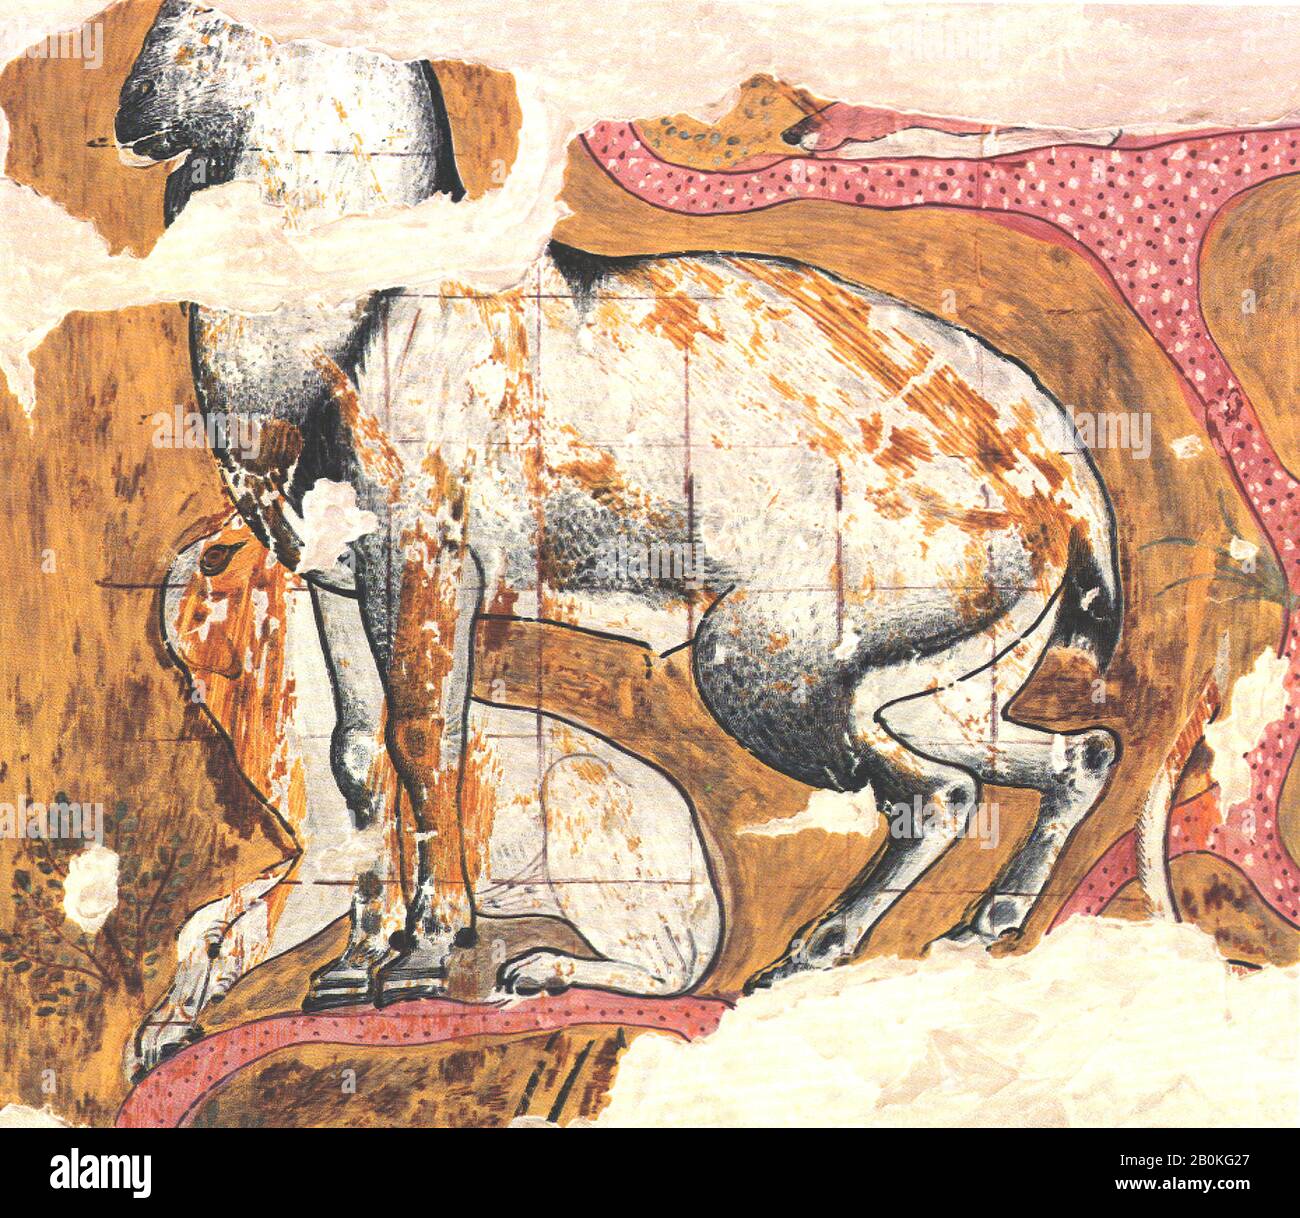 Nina de Garris Davies, Ibex et Dog de la tombe de Qamun, Nouveau Royaume, Nina de Garris Davies (1881–1965), dynastie 18, règne d'Amenhotep II, CA. 1427–1400 av. J.-C., D'Egypte, de Haute-Egypte, de Thèbes, de Sheikh Abd el-Qurna, de Tomb de Kenamun (TT 93), de Tempera sur papier, télécopieur : H. 49 cm (19 5/16 po) ; w. 57 cm (22 7/16 po), échelle 1:1, encadré : h. 52,7 cm (20 3/4 po) ; w. 60,3 cm (23 3/4 po Banque D'Images